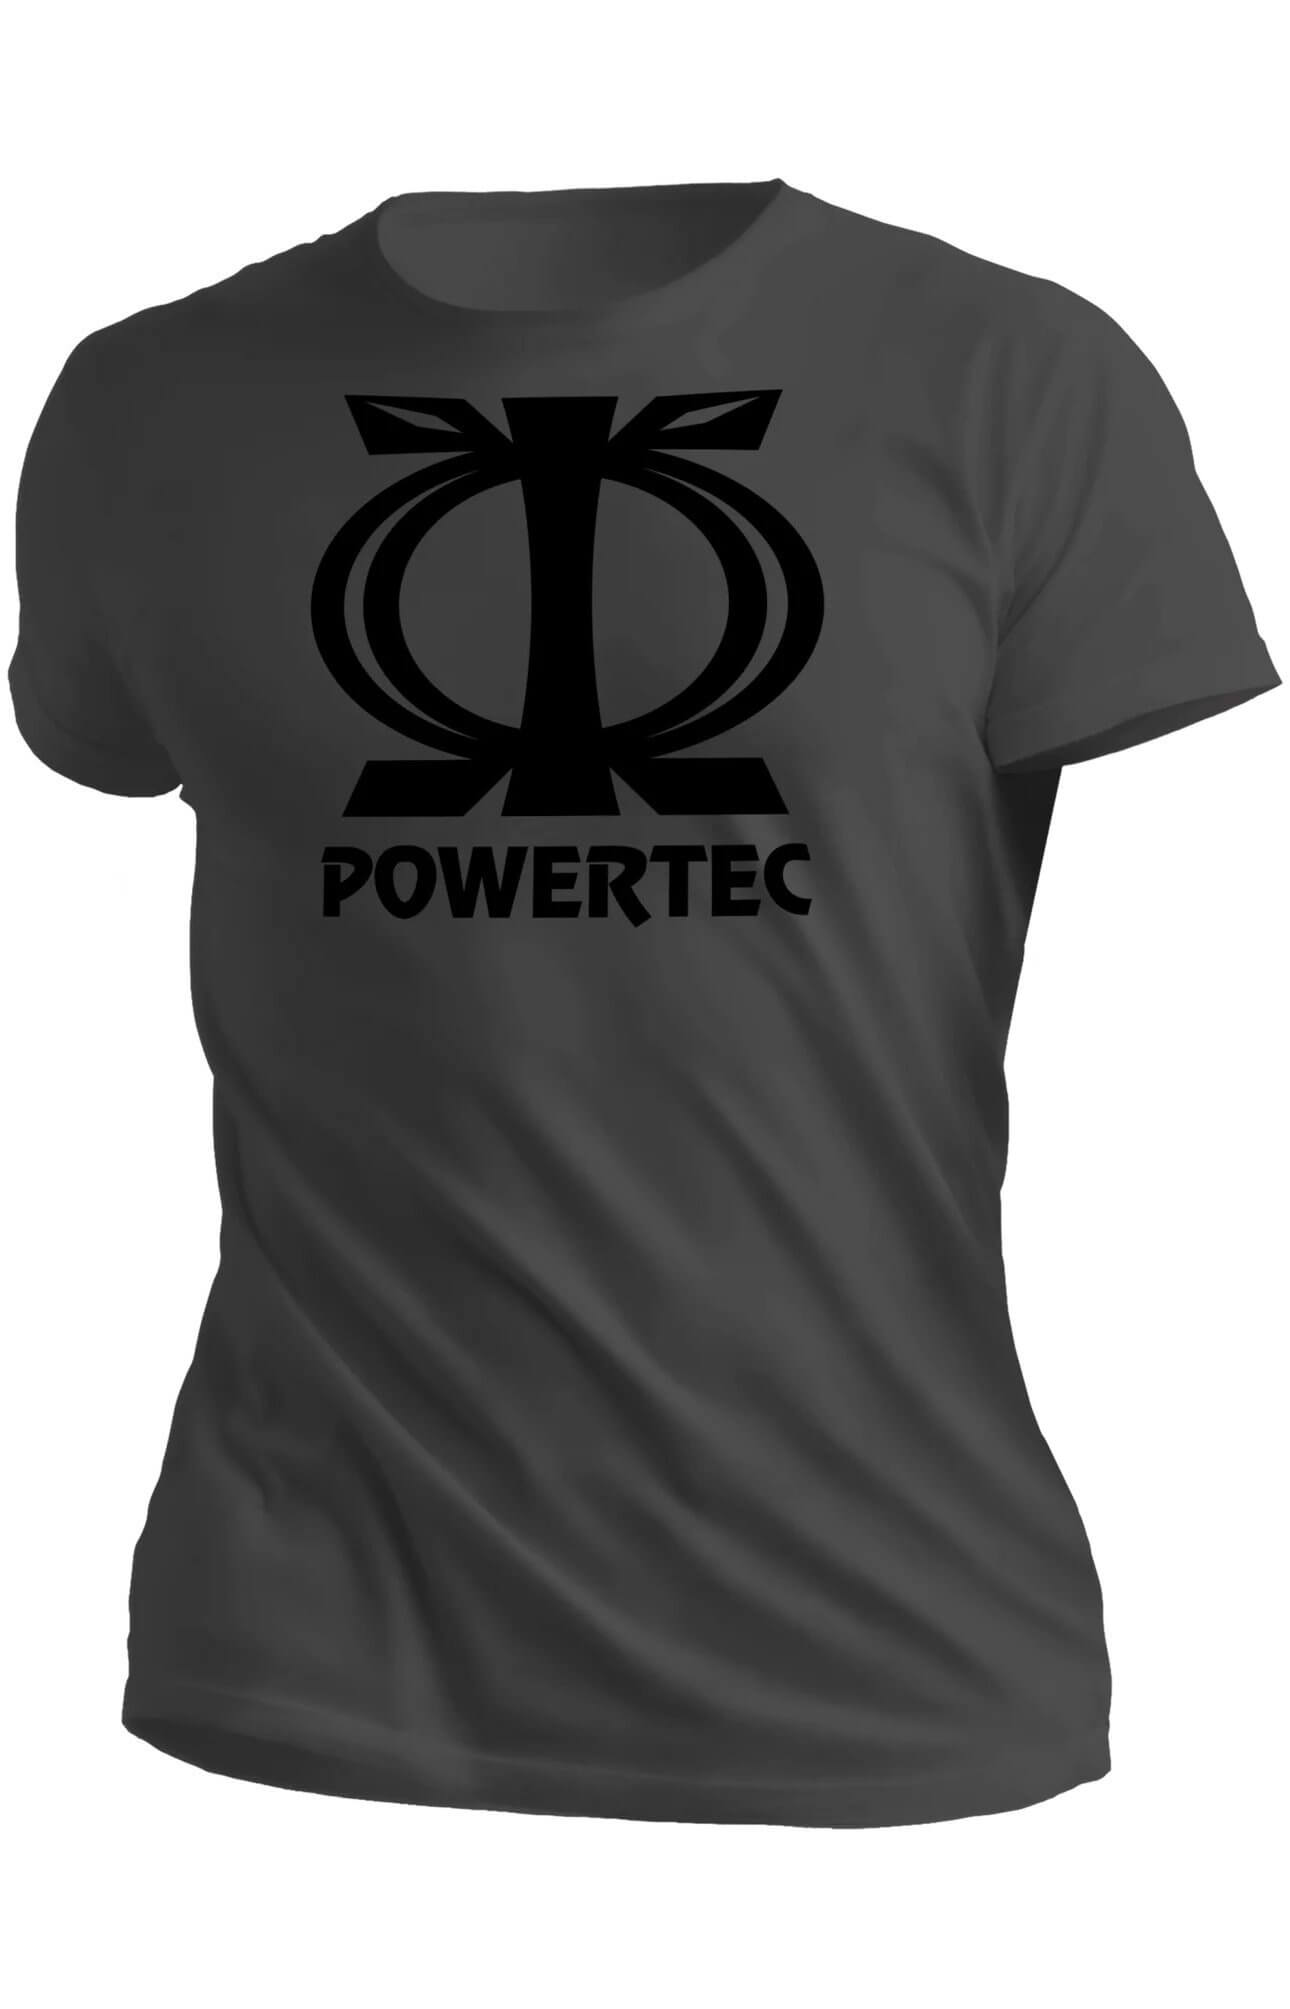 Powertec T-Shirt – Gray – Wawa Aba Logo